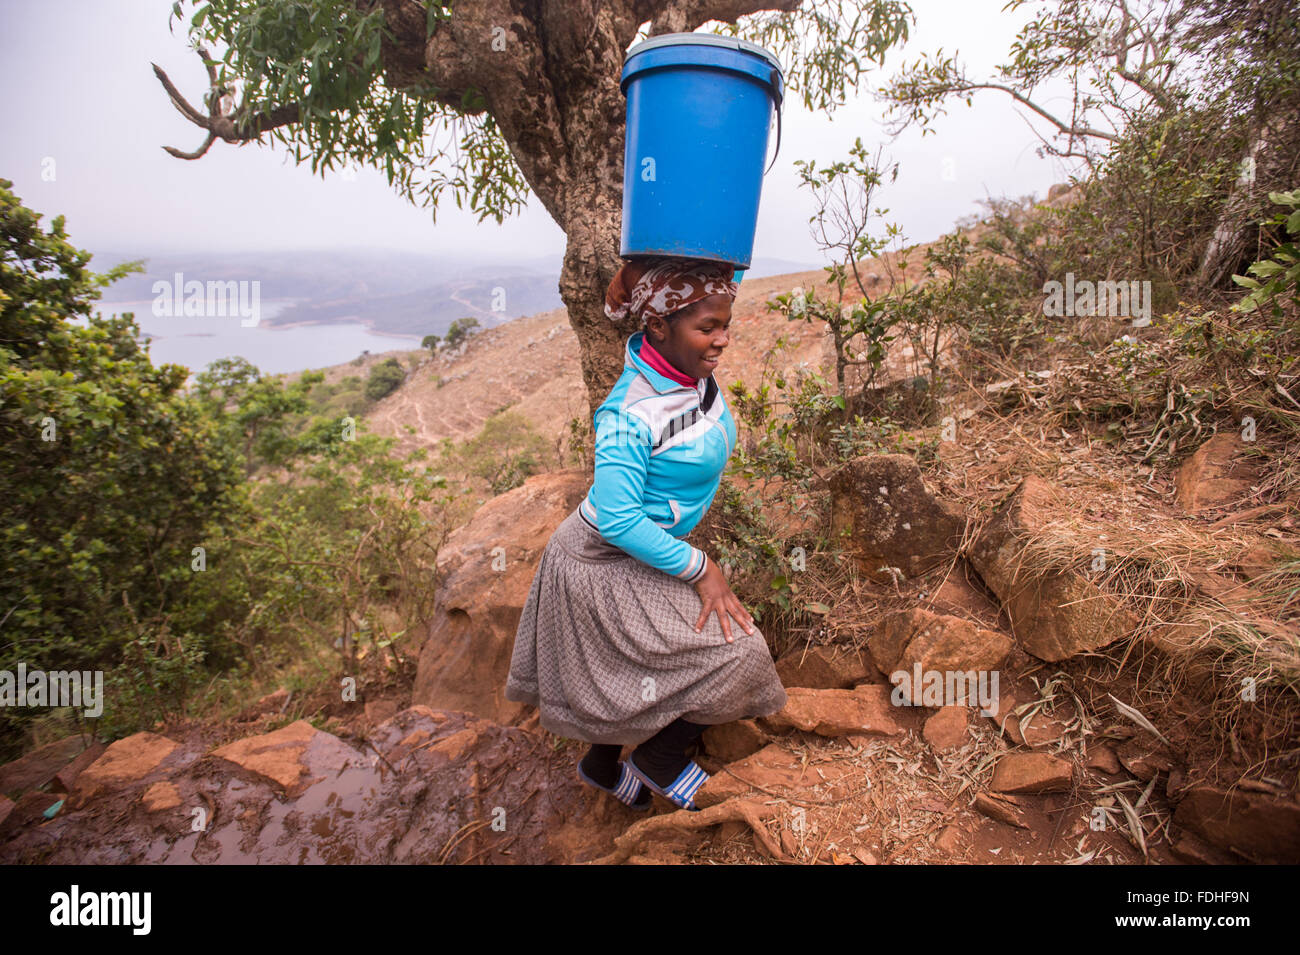 Mujer que llevaba un balde sobre la cabeza sobre el terreno rocoso en la región de Hhohho de Swazilandia, en África. Foto de stock